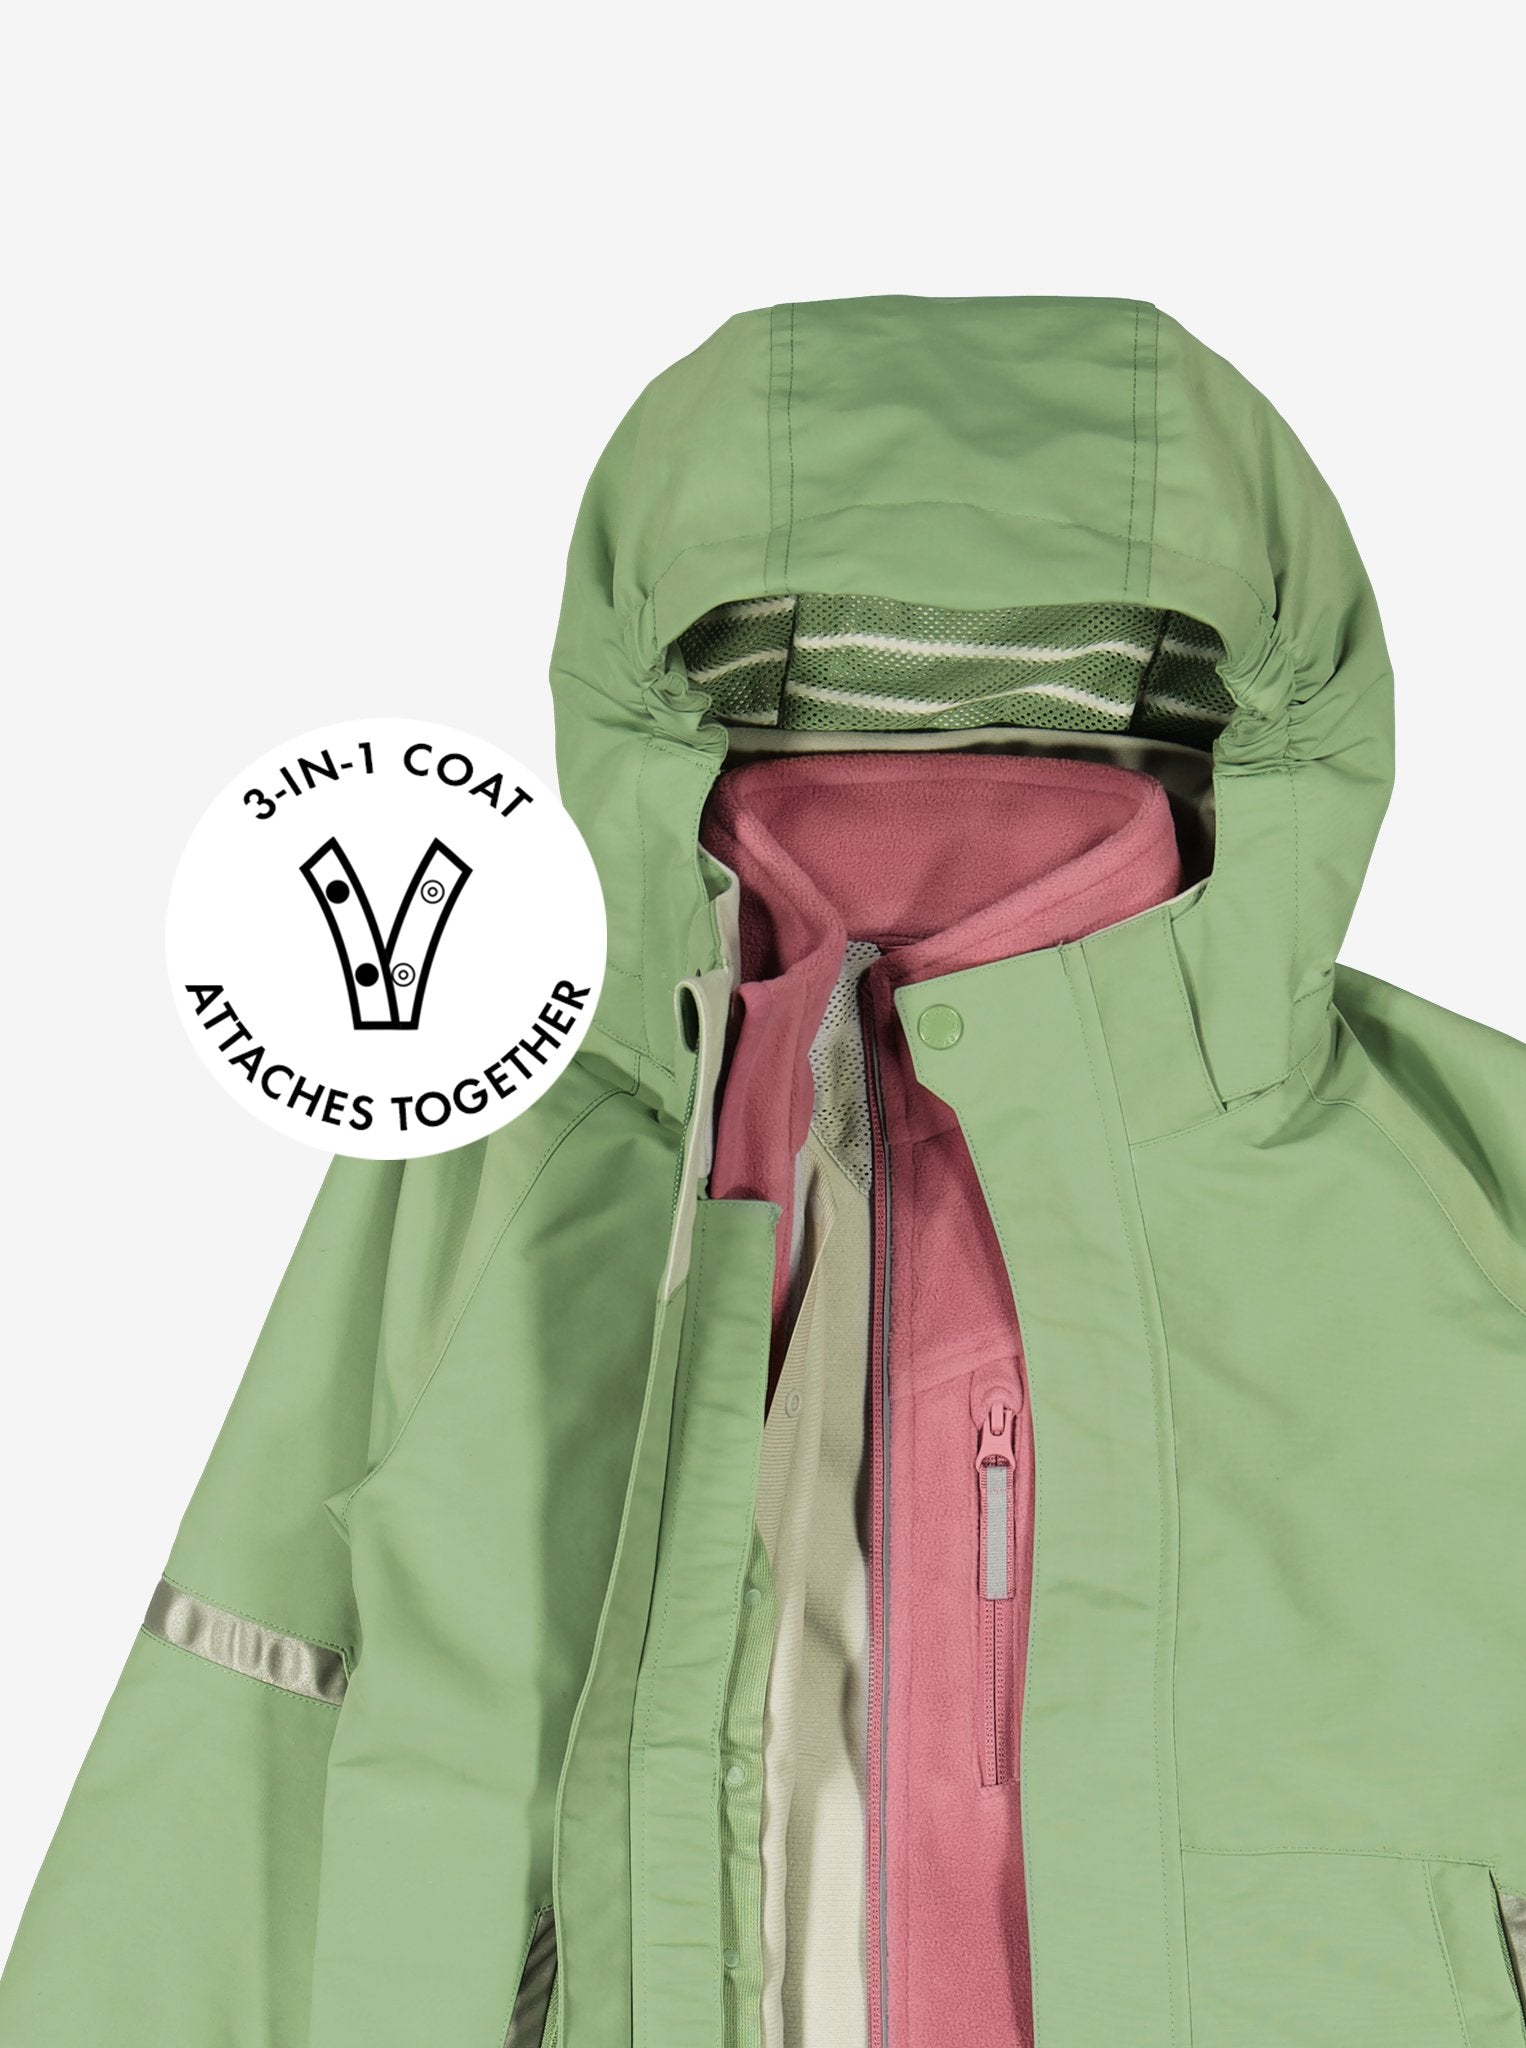 Green Kids Waterproof Jacket from Polarn O. Pyret Kidswear. Waterproof Kids Jacket